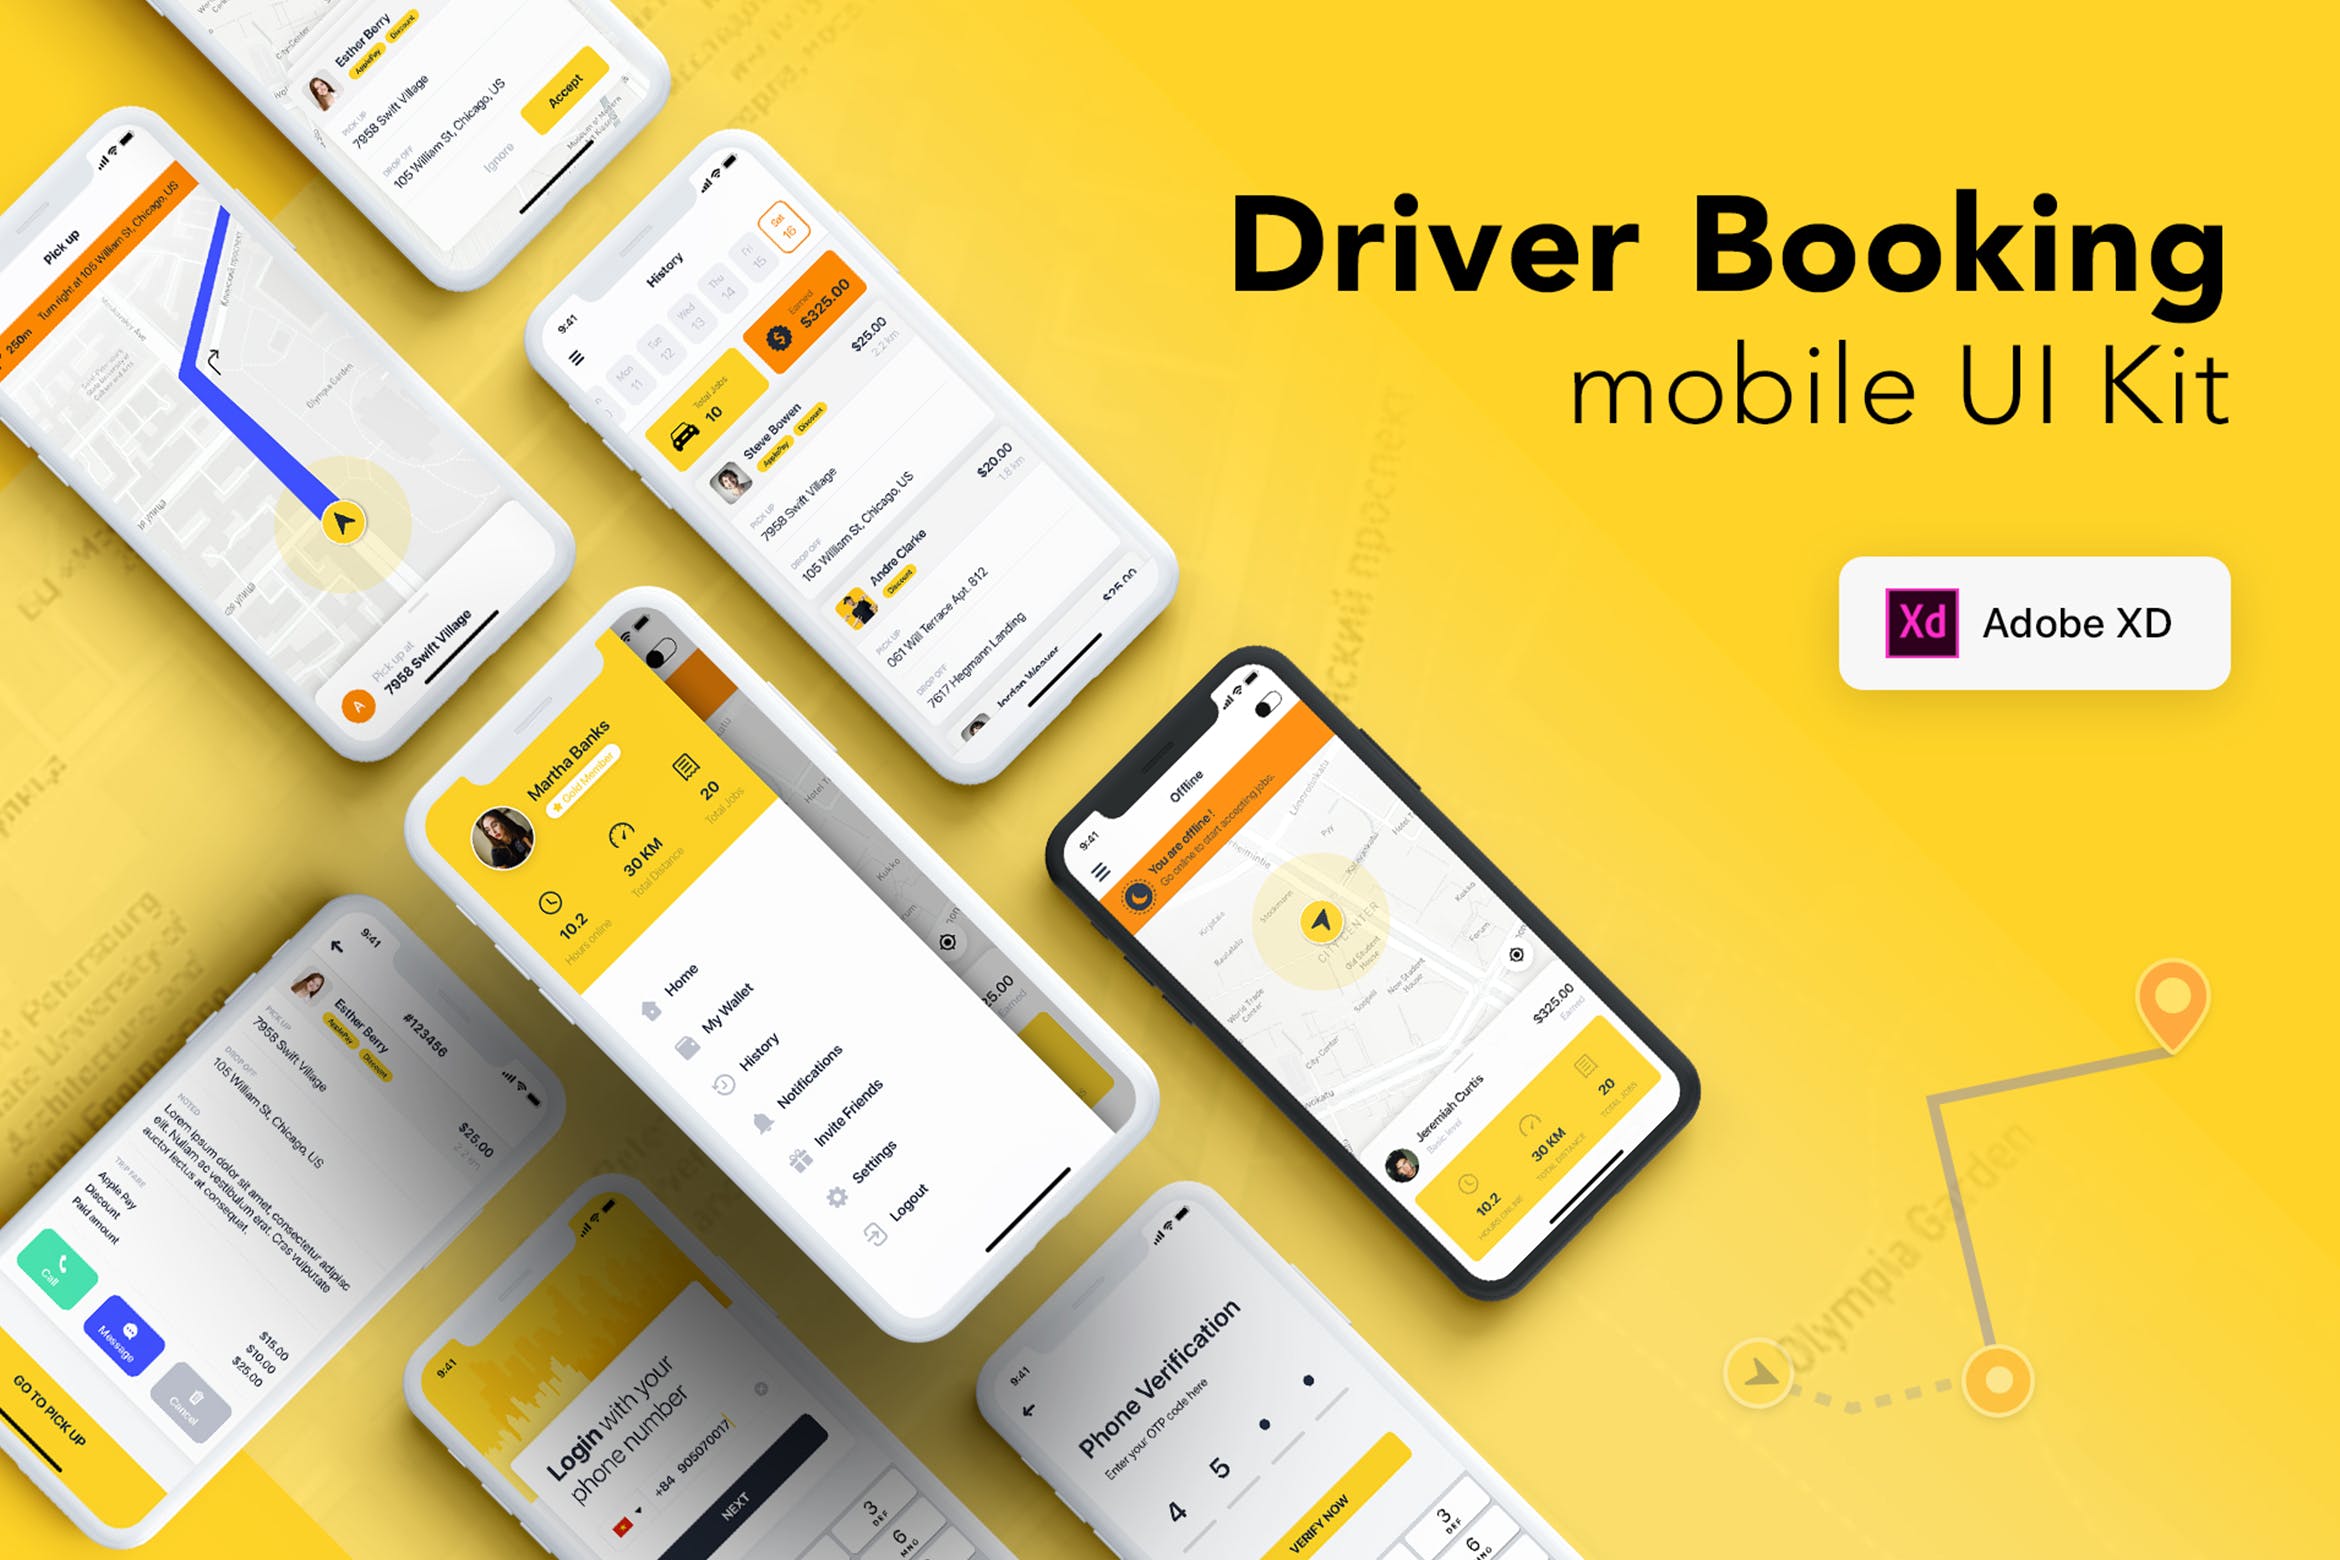 类滴滴出行出租车/网约车打车软件UI设计XD模板 Taxi Driver Booking UI Kit for ADOBE XD插图